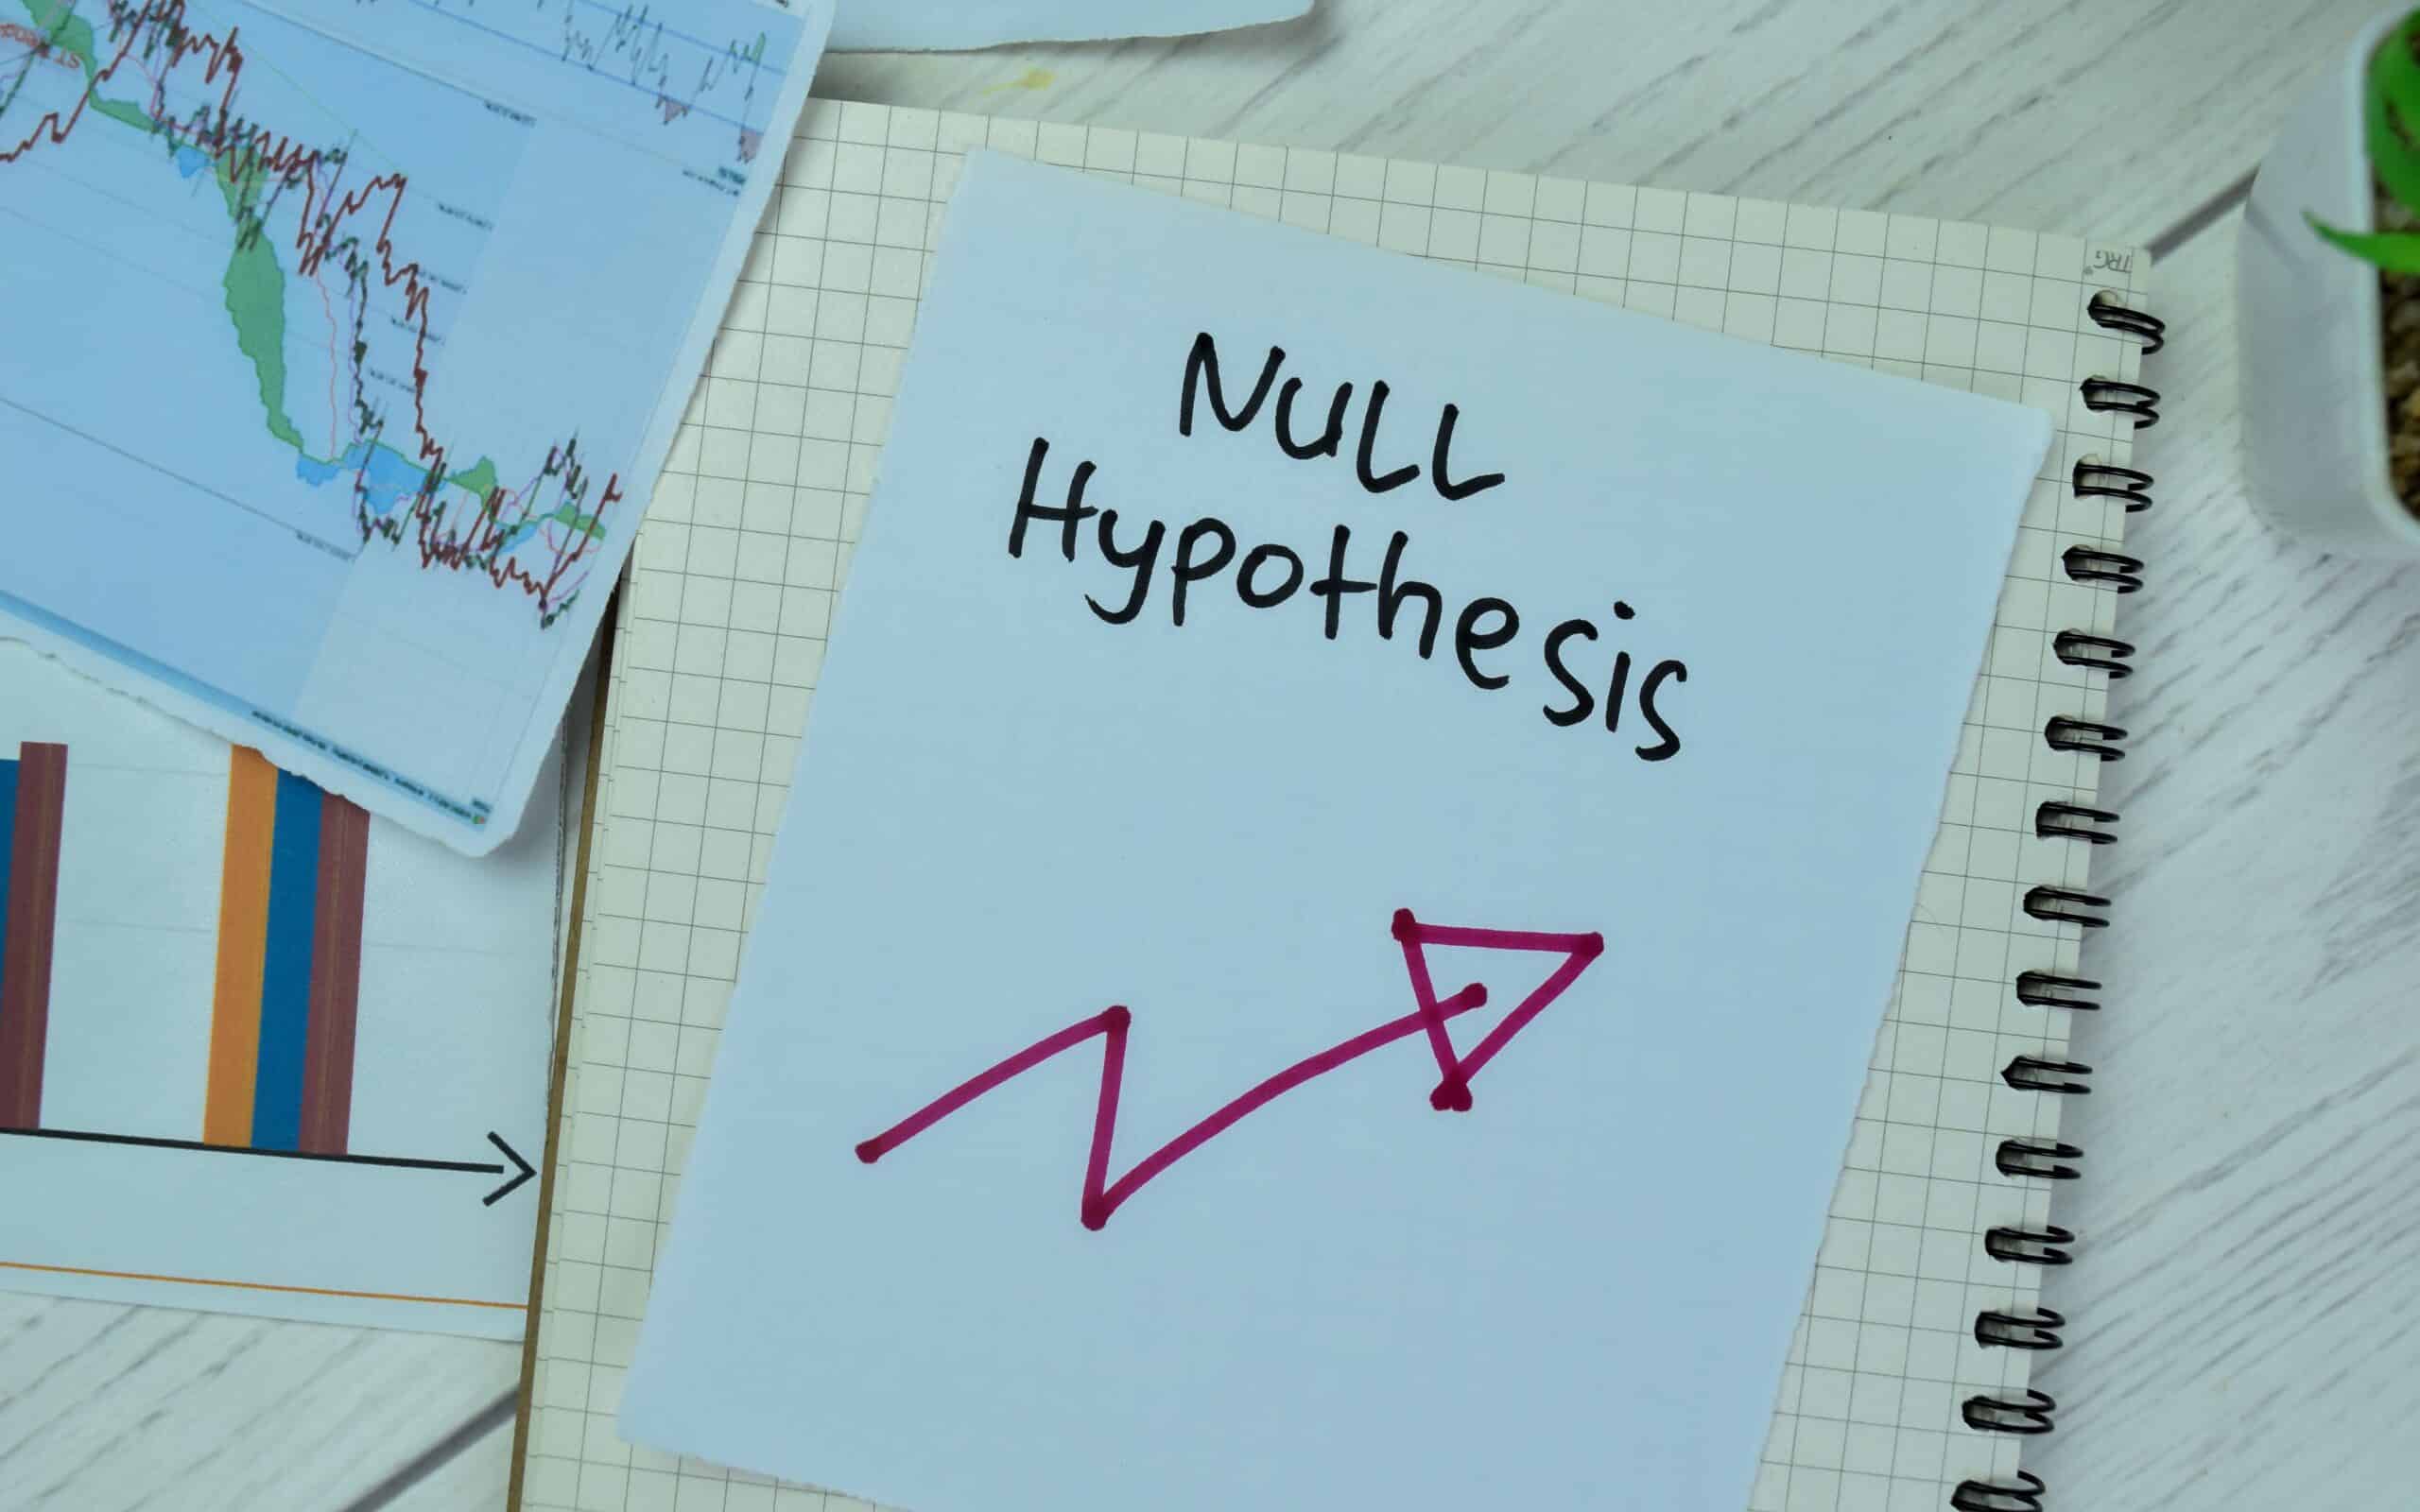 ho hypothesis symbol